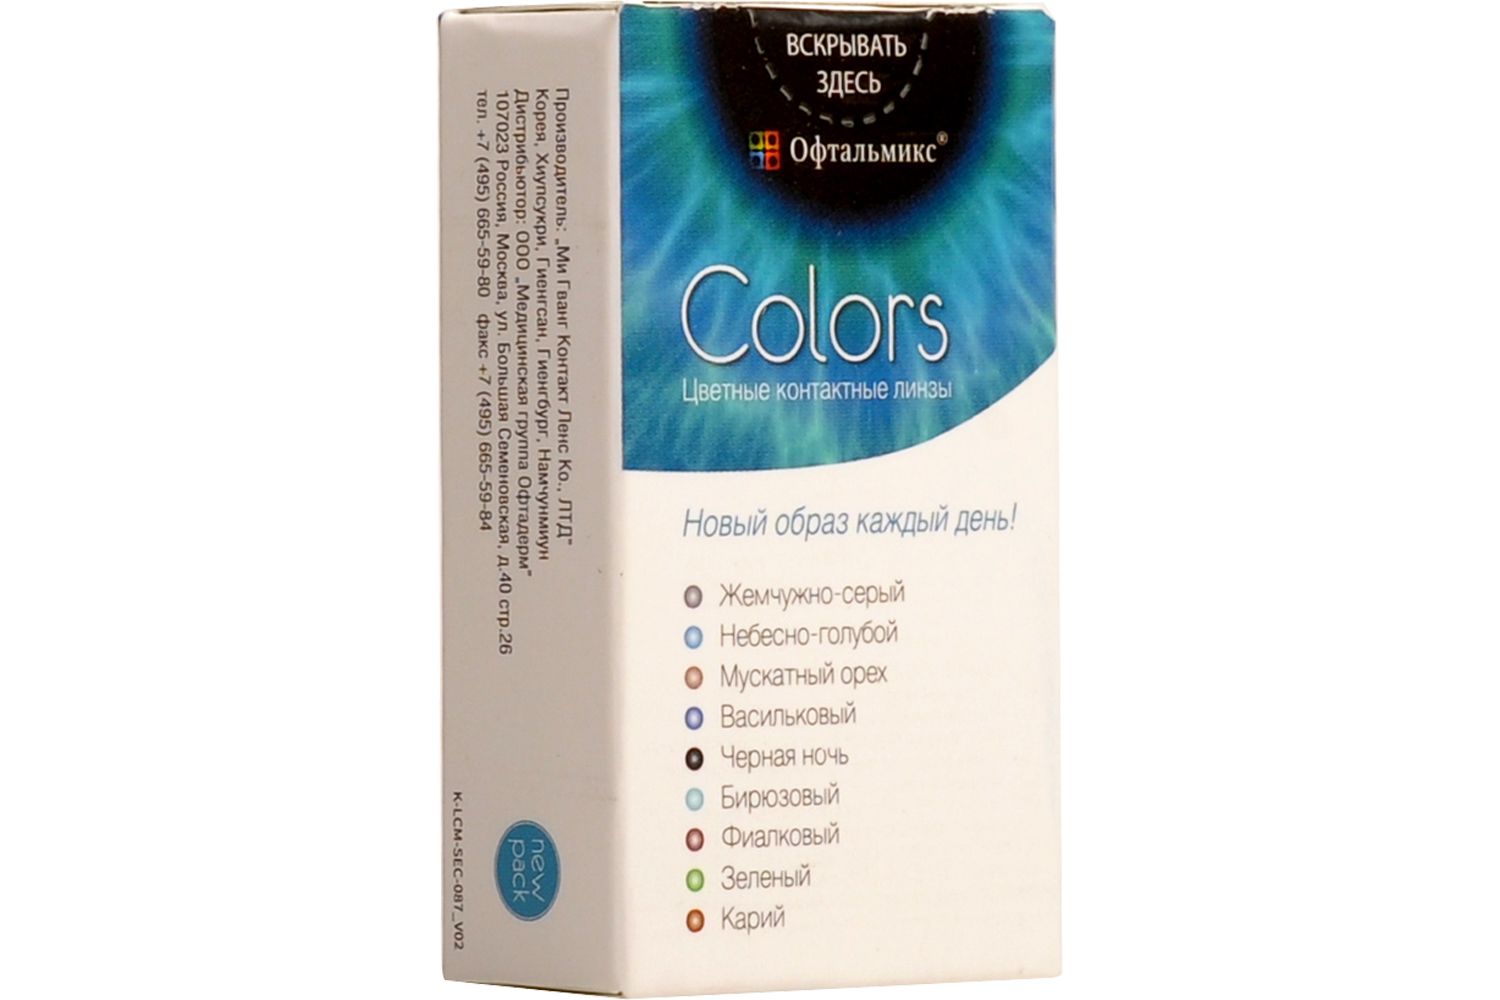 Купить Colors 2 линзы, Цветные контактные линзы Офтальмикс Colors, 2 шт. PWR -2, 50, R 8.6, Cloud